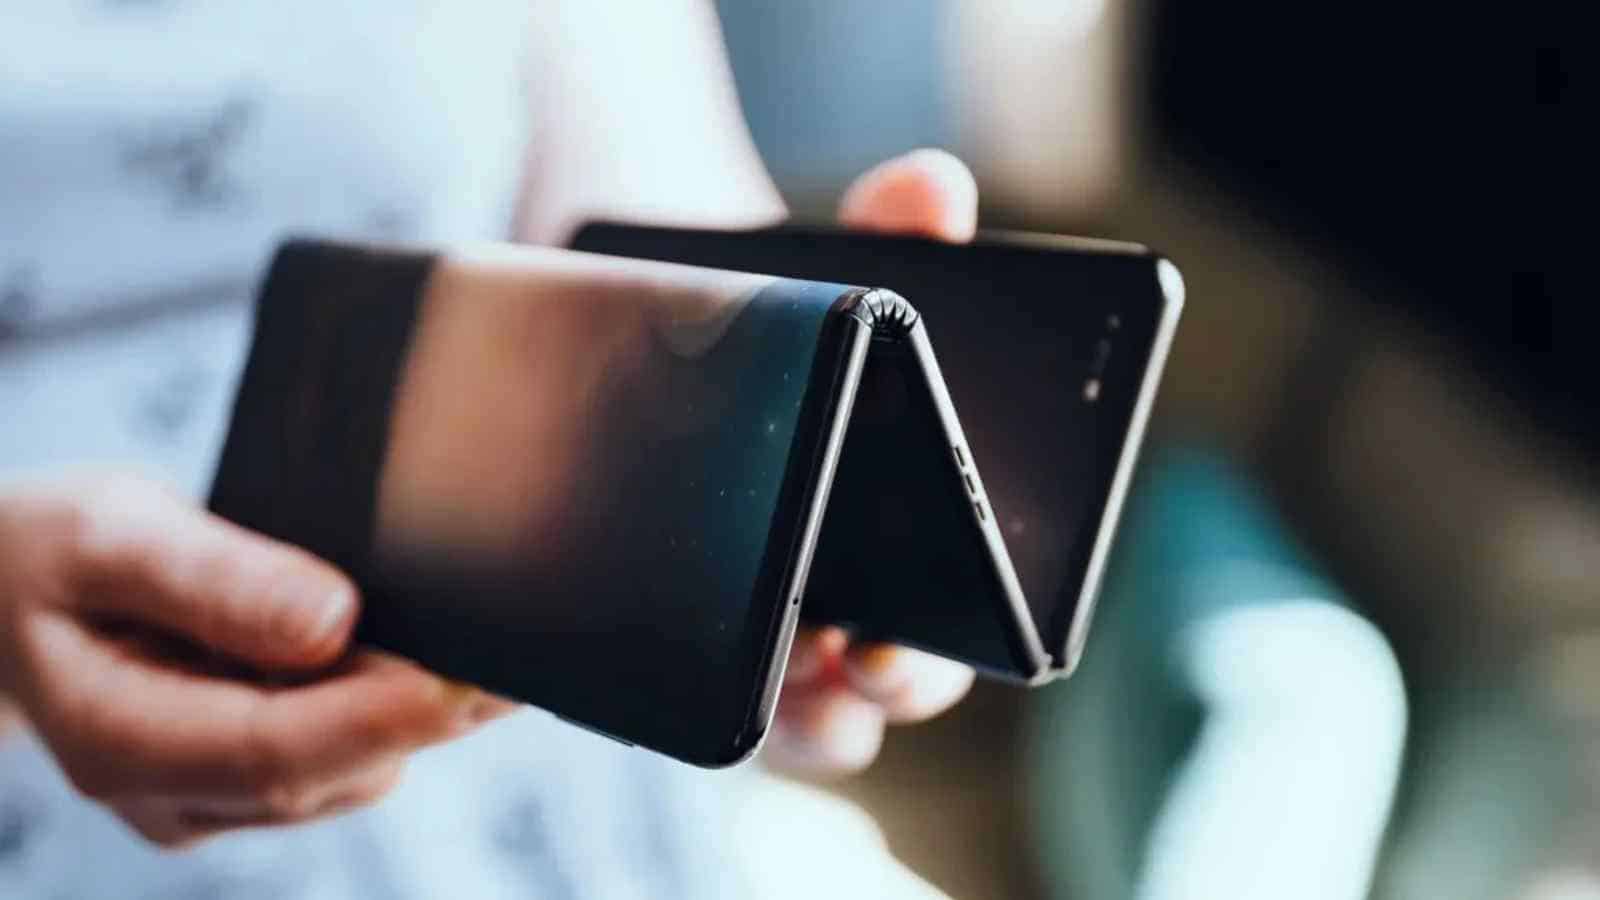 Huawei non si ferma davanti a nessun ostacolo nella sua ricerca tecnologica per la riuscita del primo smartphone pieghevole tri-fold.